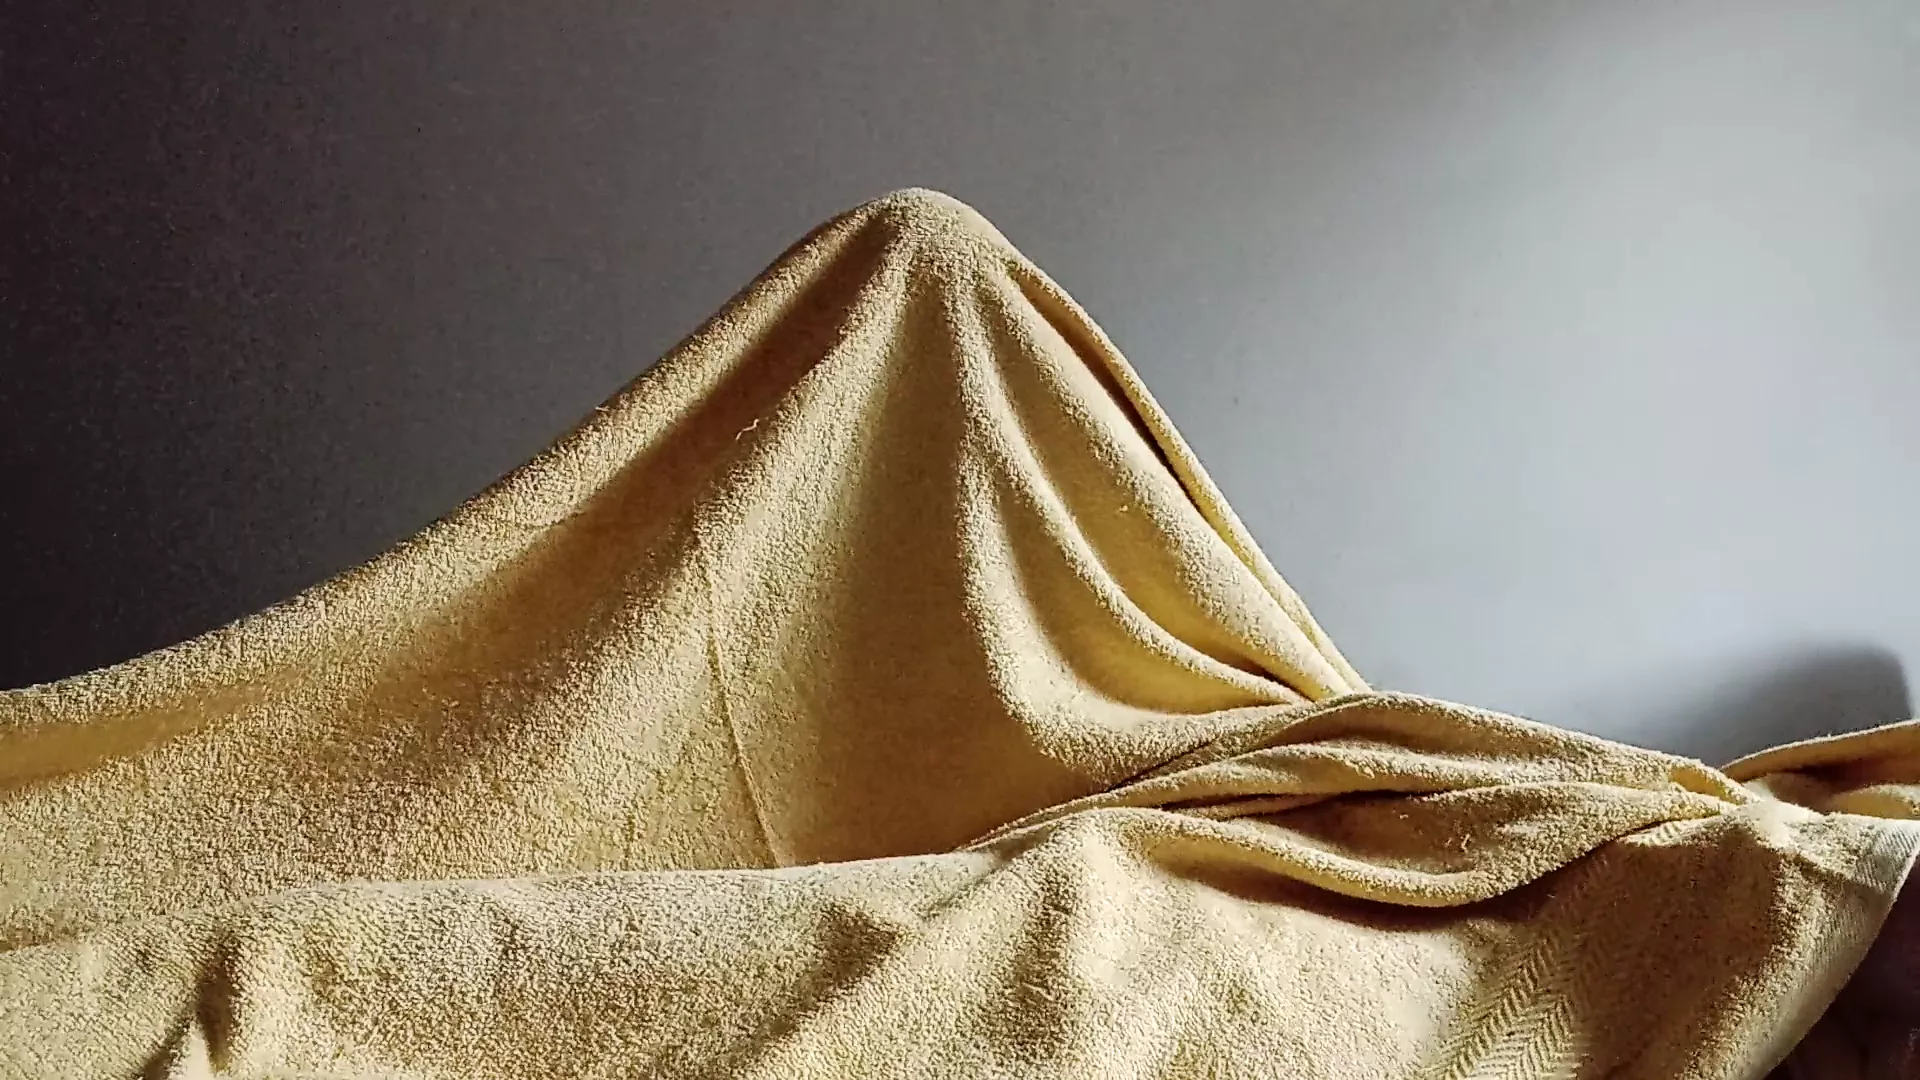 Morning masturbation under the blanket